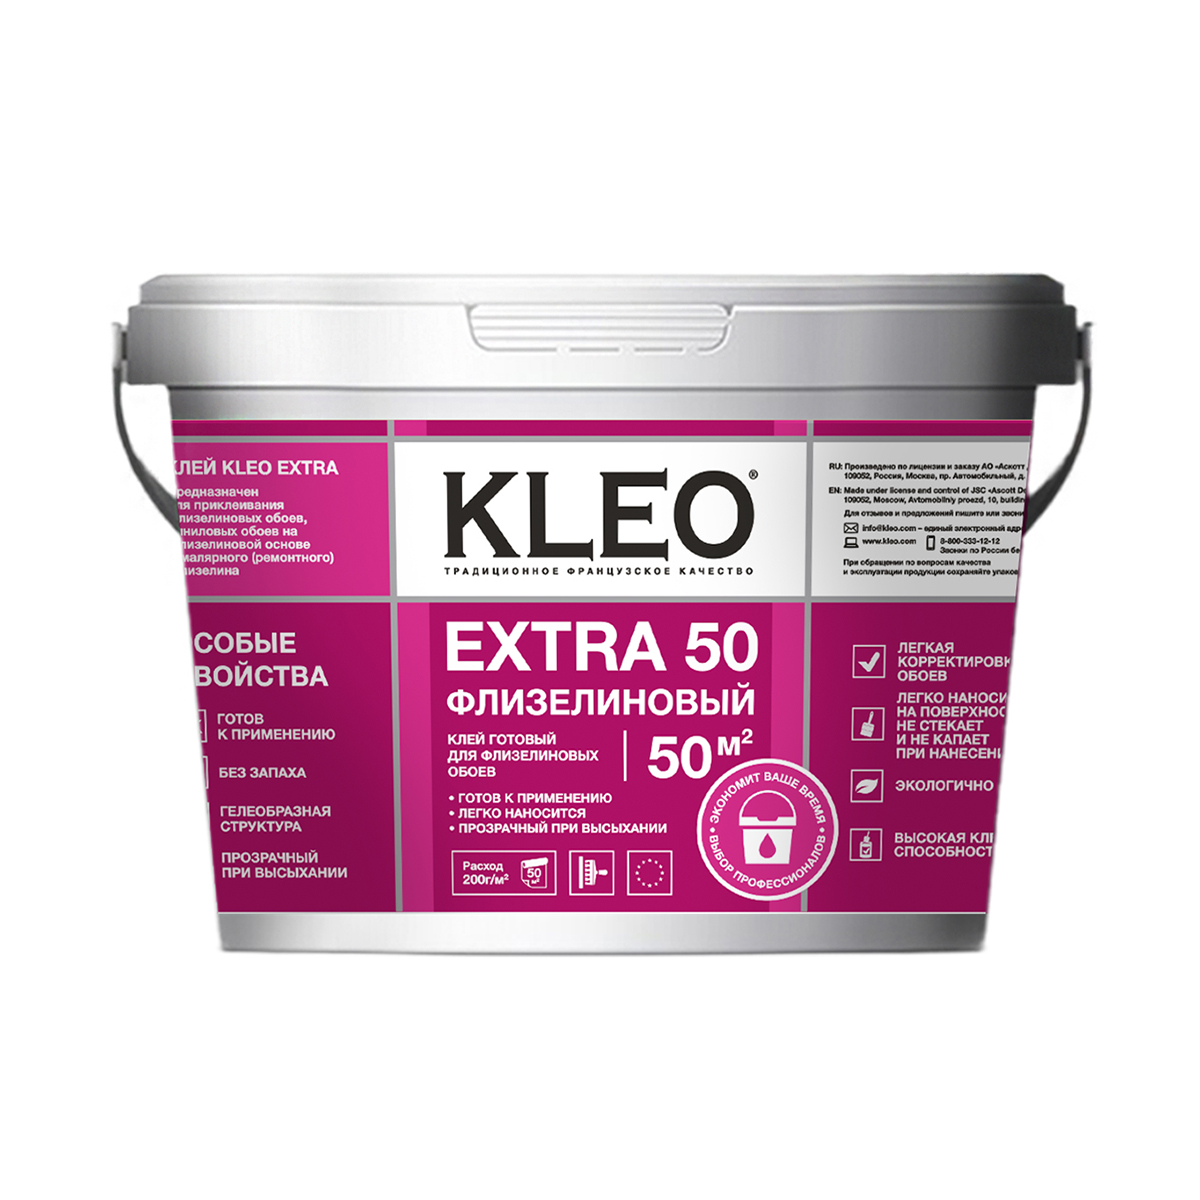 Клей для флизелиновых обоев Kleo Extra 50 готовый, 10 кг сыпучий клей для виниловых обоев kleo